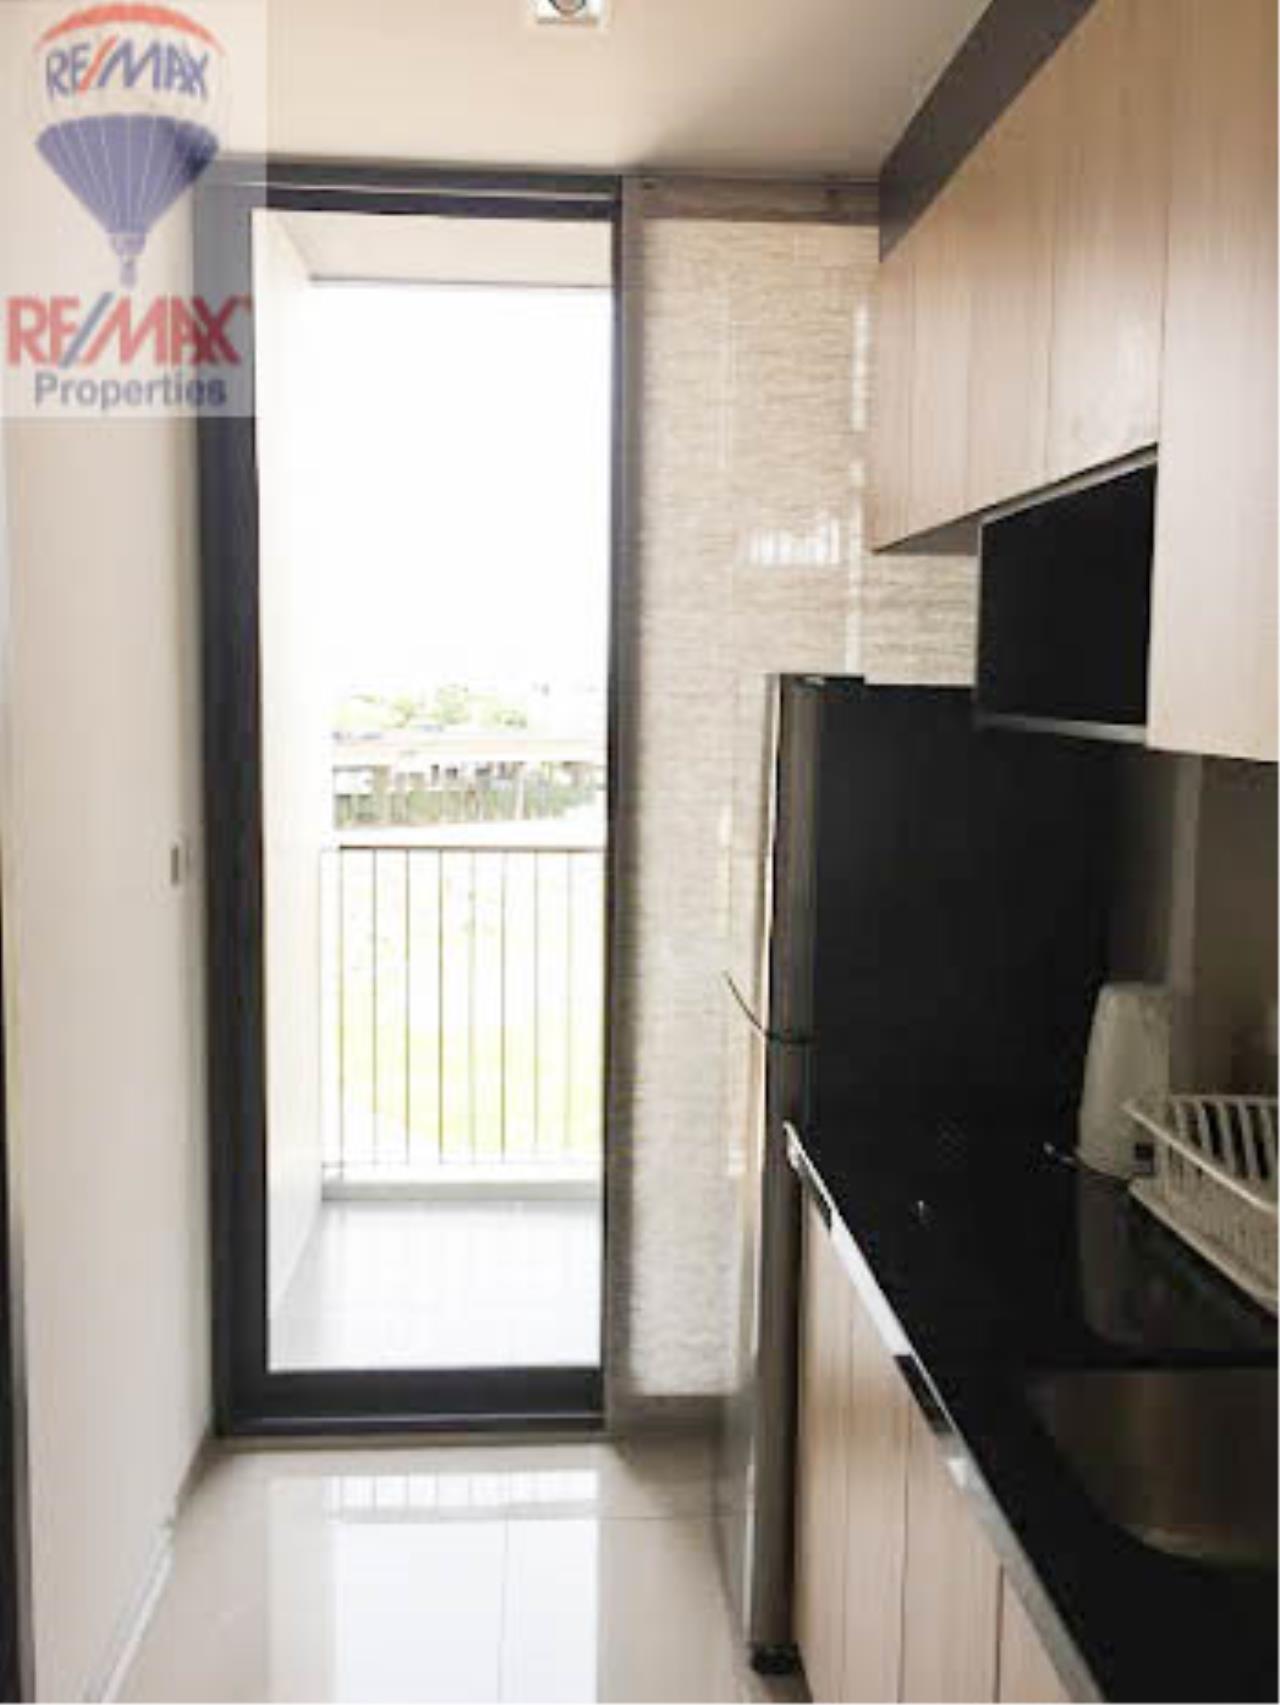 RE/MAX Properties Agency's Hasu Haus 1 Bedroom For Rent 6